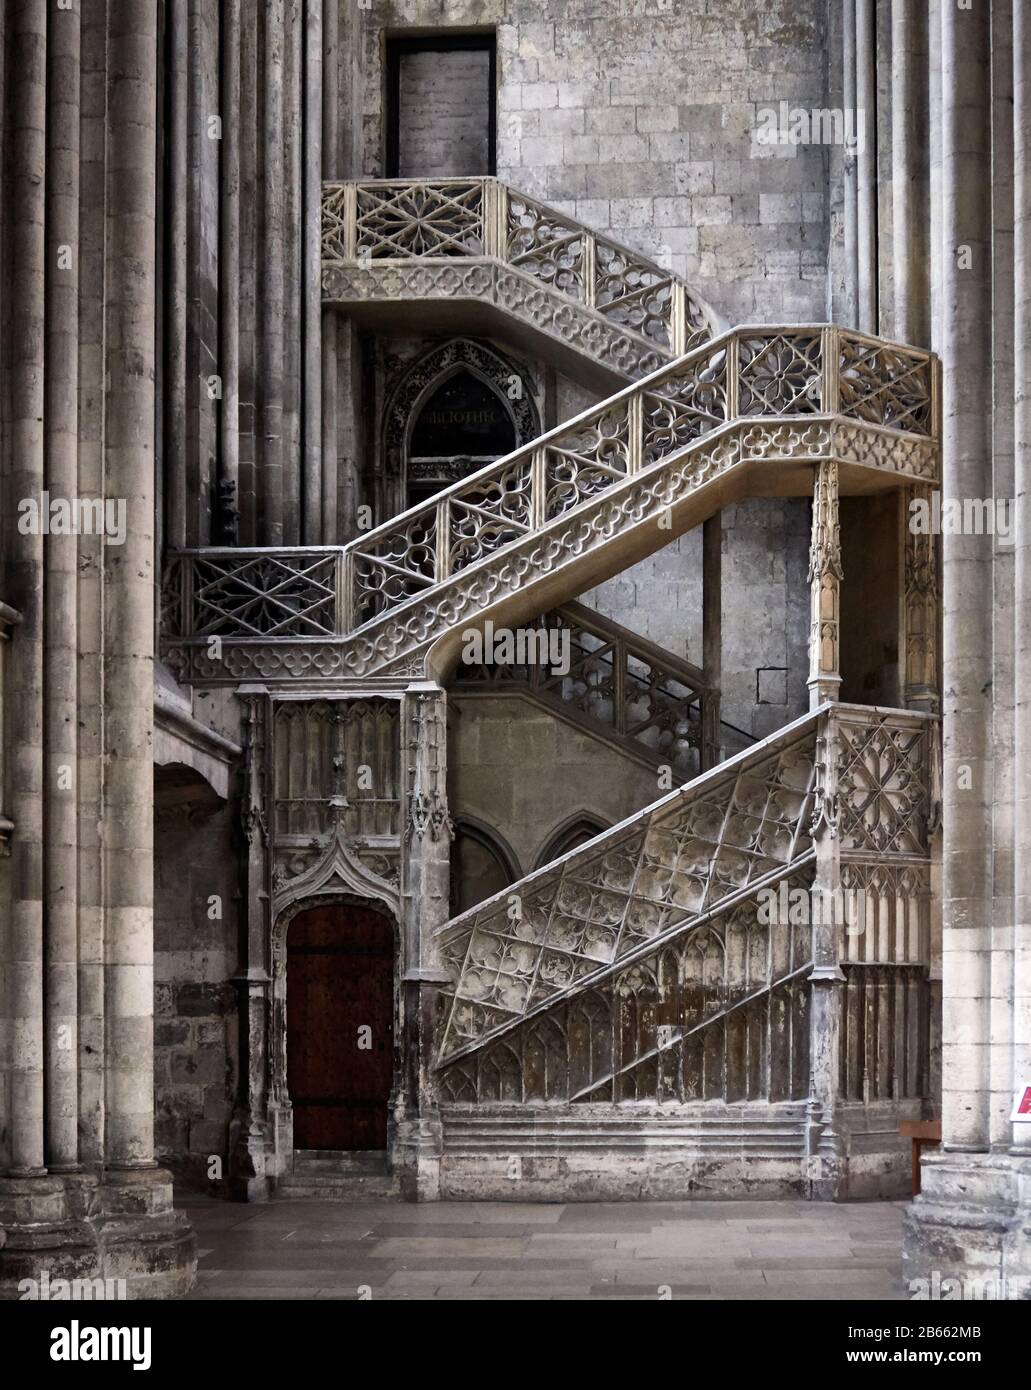 Steintreppe in der Kathedrale von Rouen - bekannt als Notre-Dame de l'Assomption de Rouen ist eine römische katholische Kirche, La magnifique cathédrale gothique de Rouen a la plus Haute flèche d'église de France et une richesse d'Art, d'histoire et de détails architecturaux Stockfoto